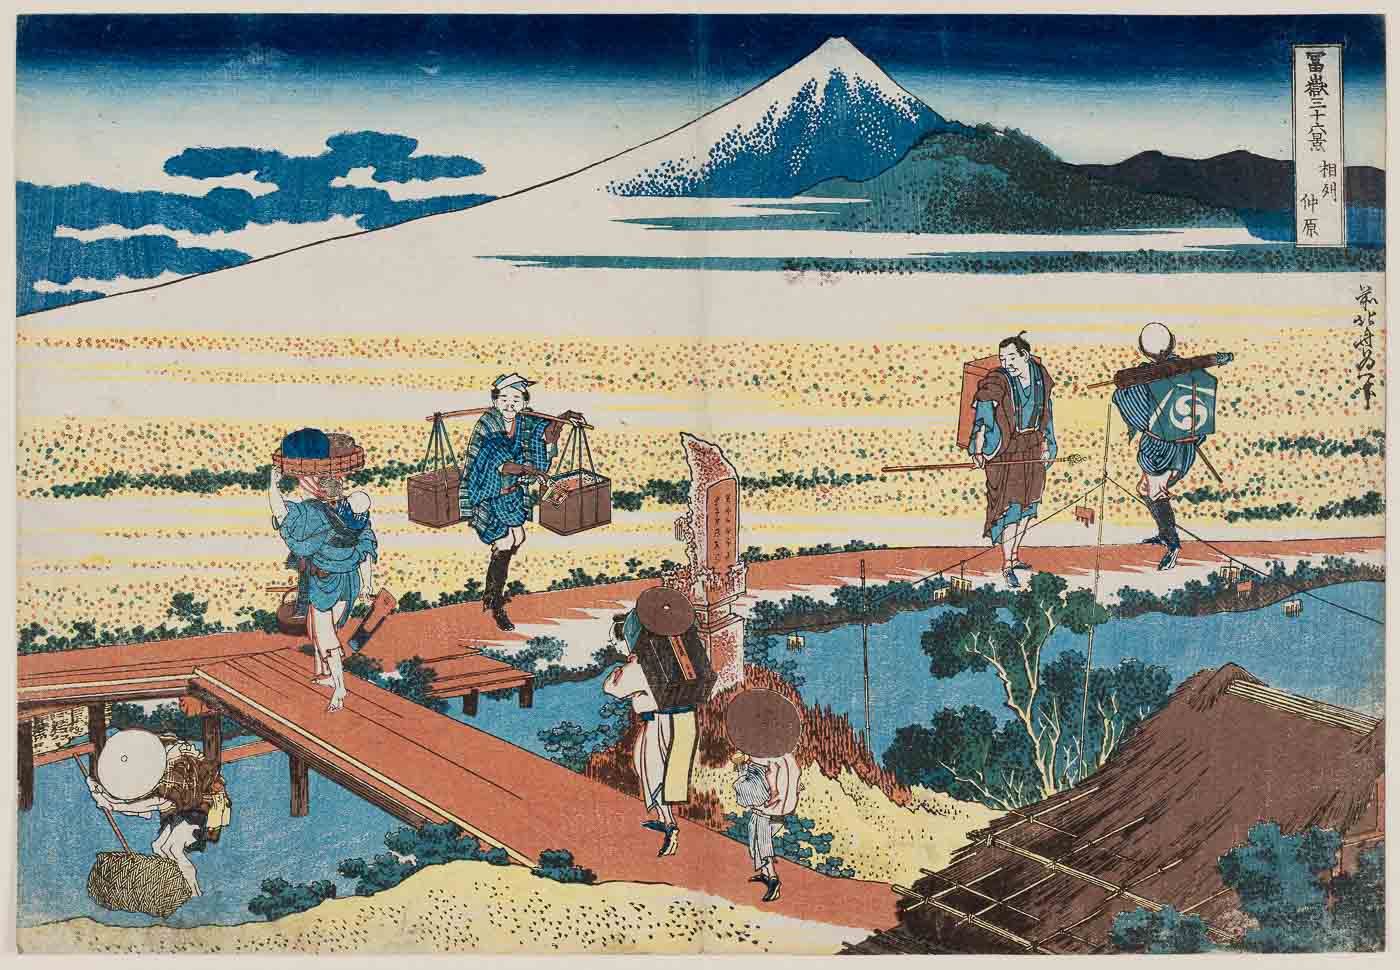 Quadri famosi tsunami di Hokusai, stampa su tela per le pareti